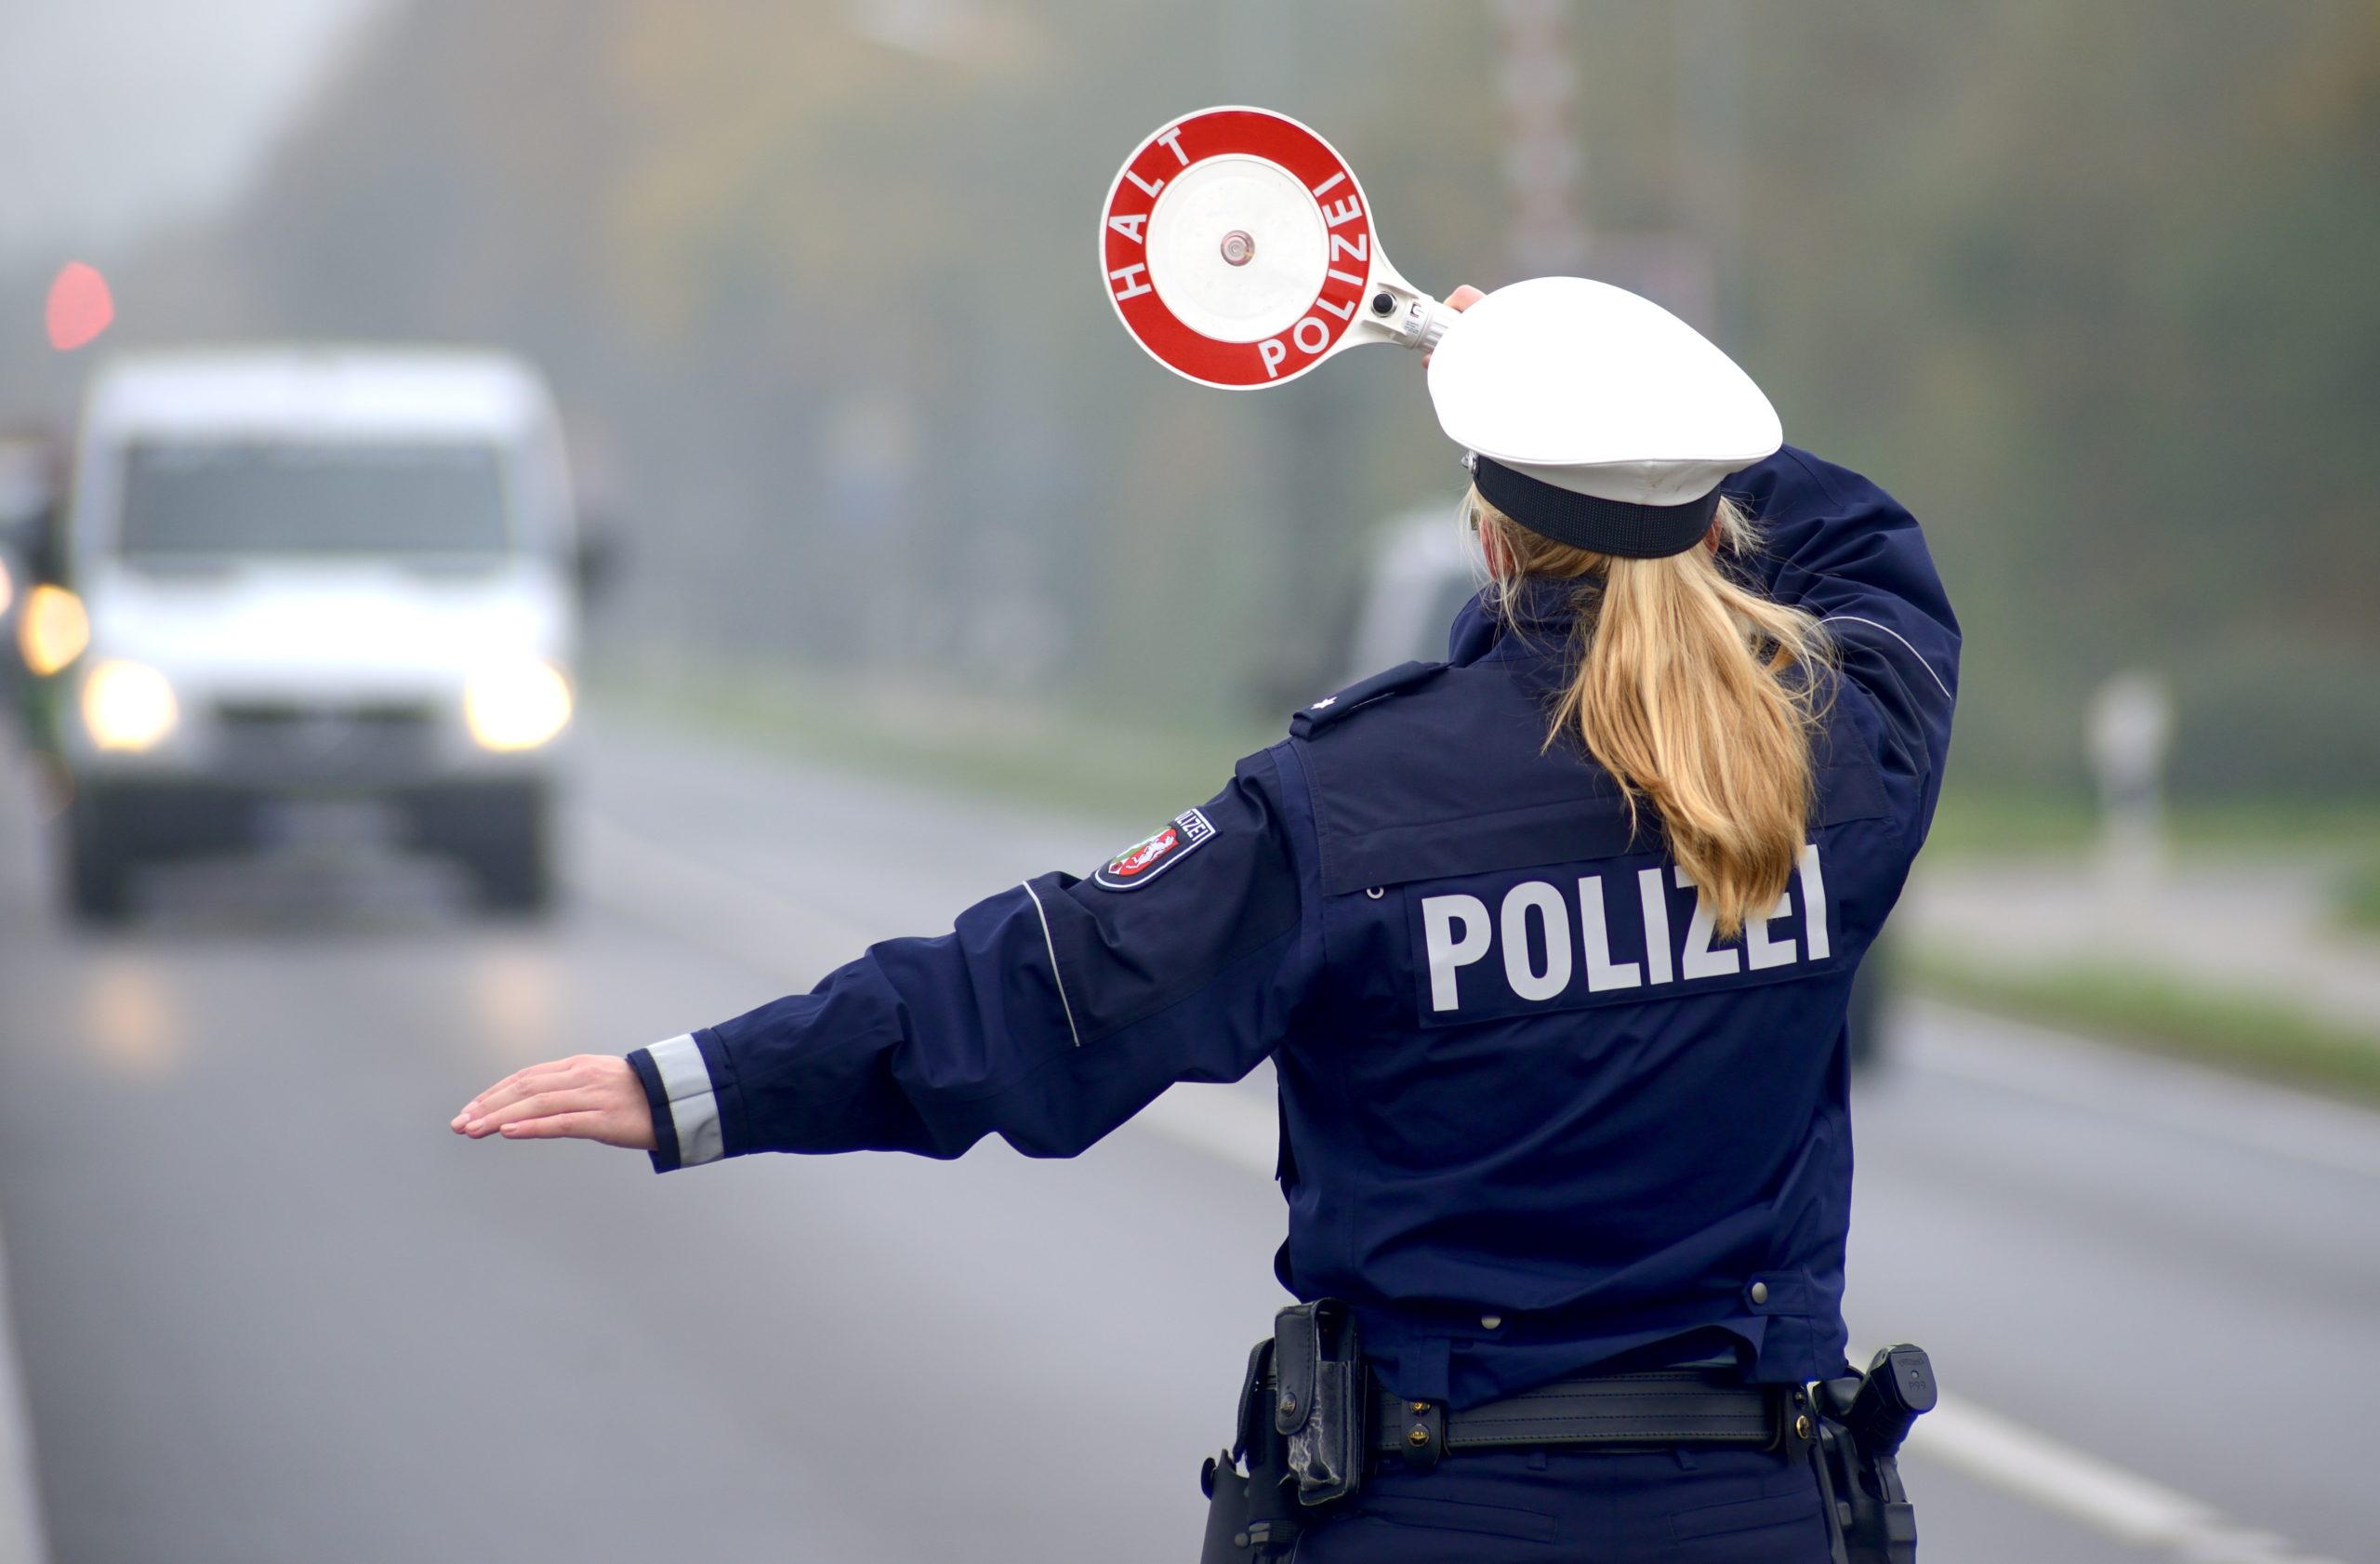 Alkoholtest der Polizei in der Verkehrskontrolle: Darf man verweigern?